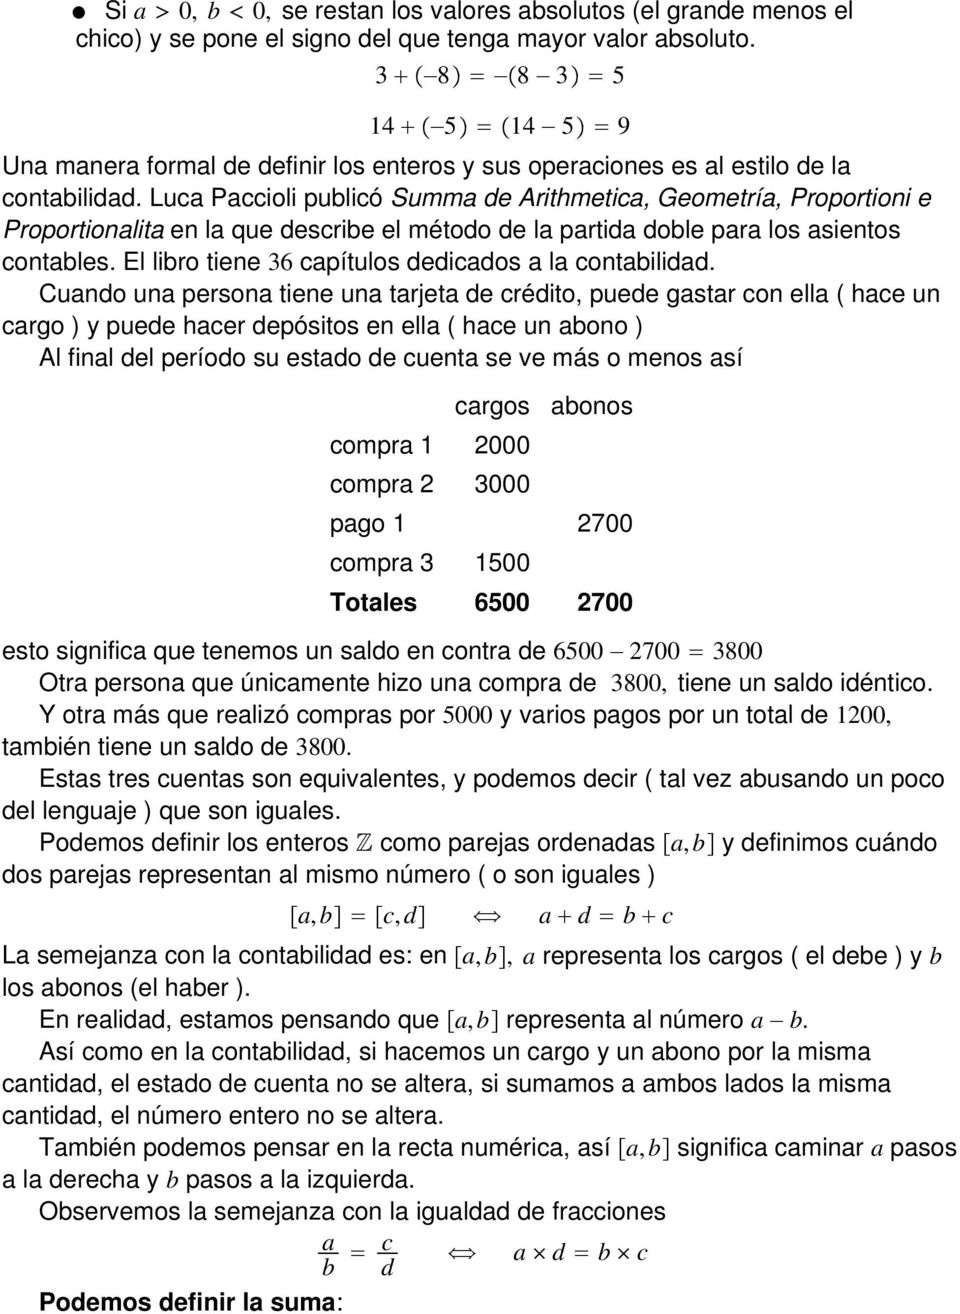 Luc Pccioli pulicó Summ de Arithmetic, Geometrí, Proportioni e Proportionlit en l que descrie el método de l prtid dole pr los sientos contles. El liro tiene 6 cpítulos dedicdos l contilidd.